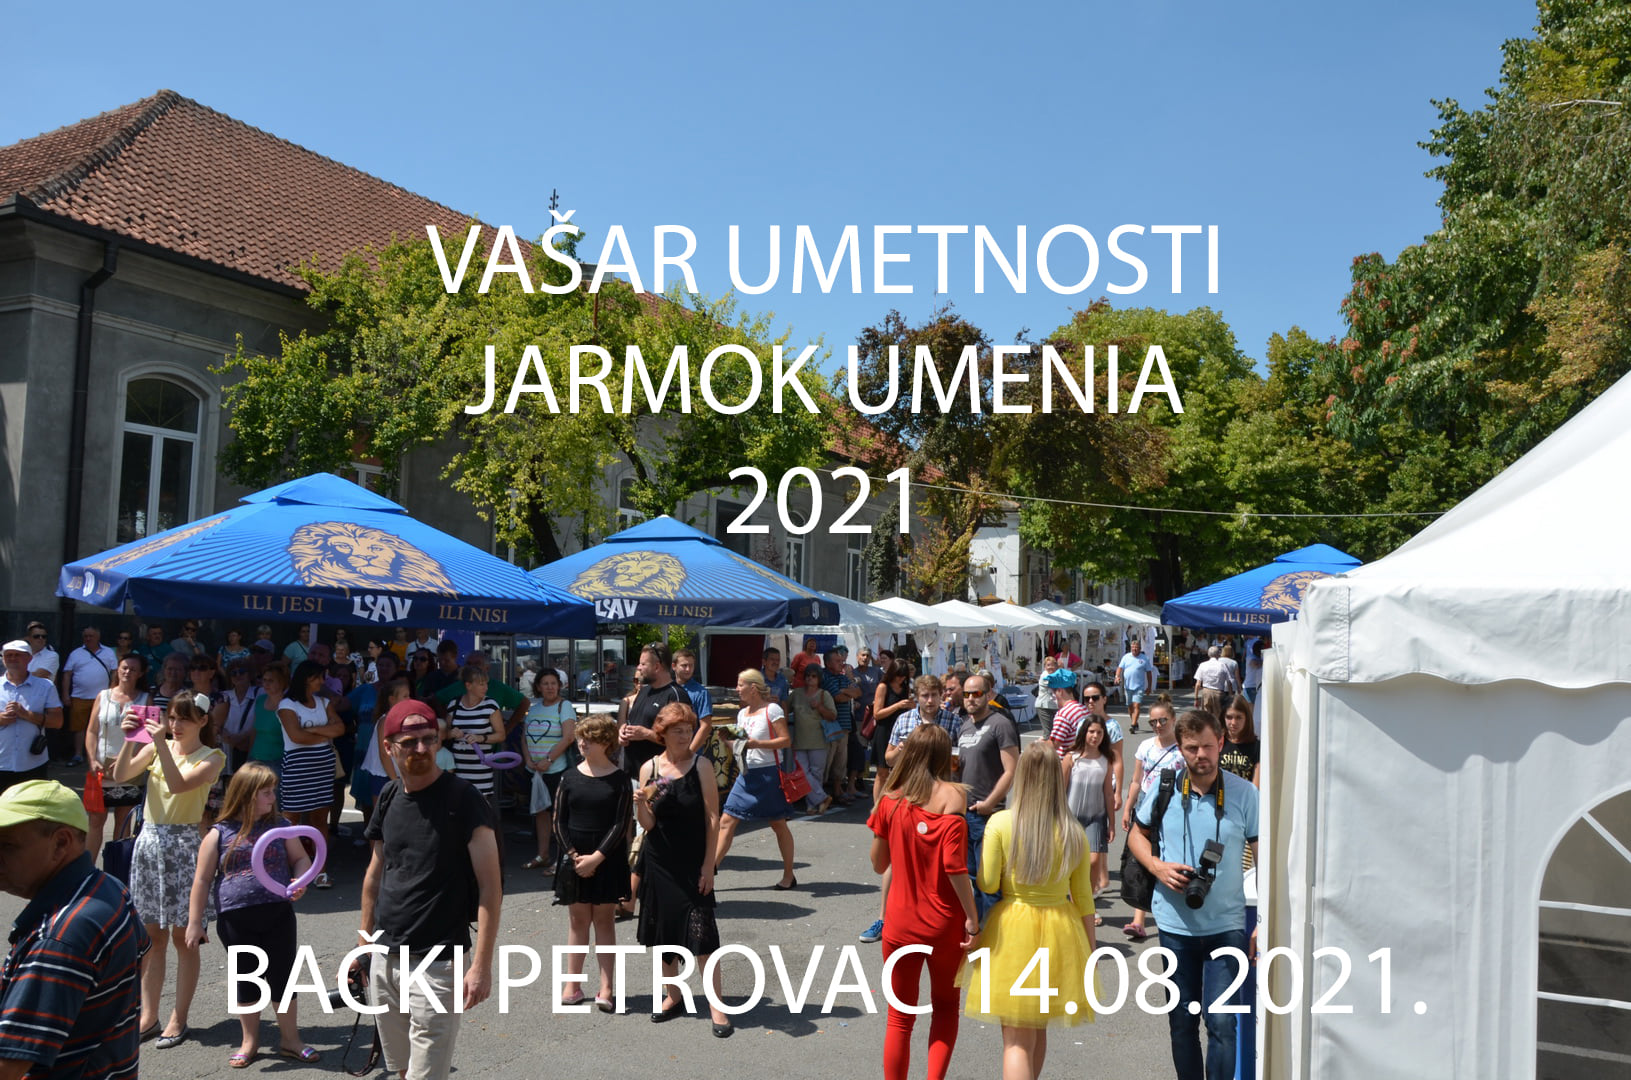 plakat-vasar-umetnosti-2021-backi-petrovac